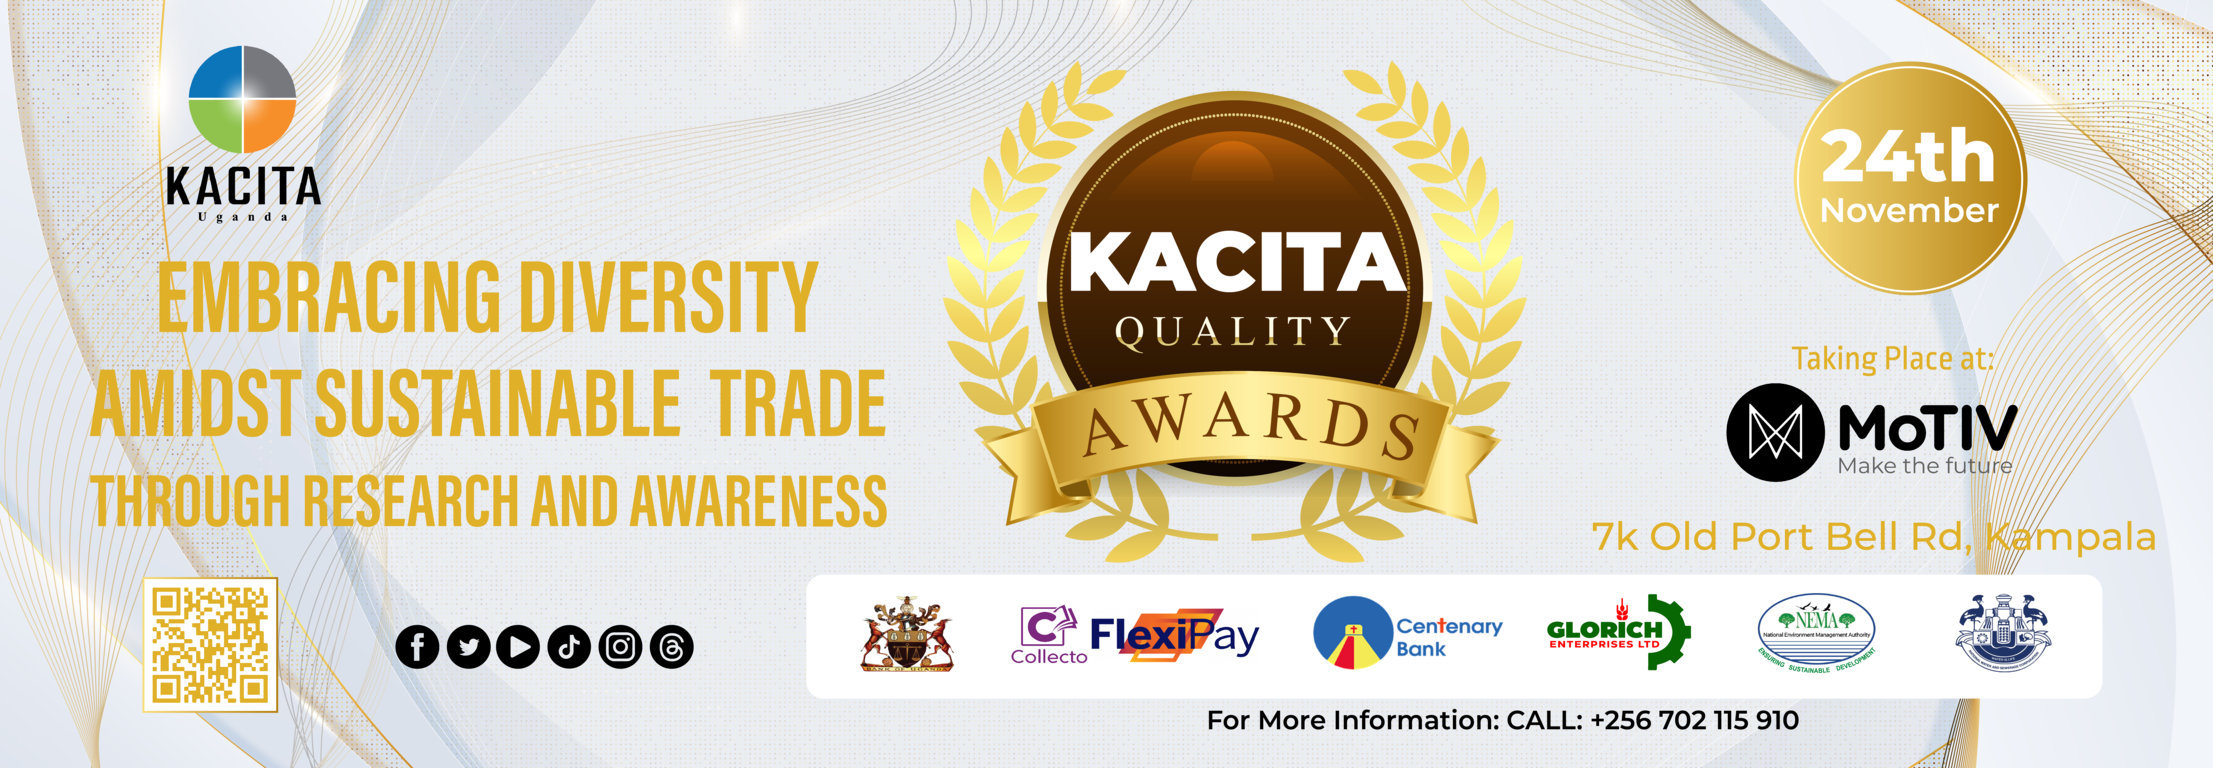 KACITA Quality Awards